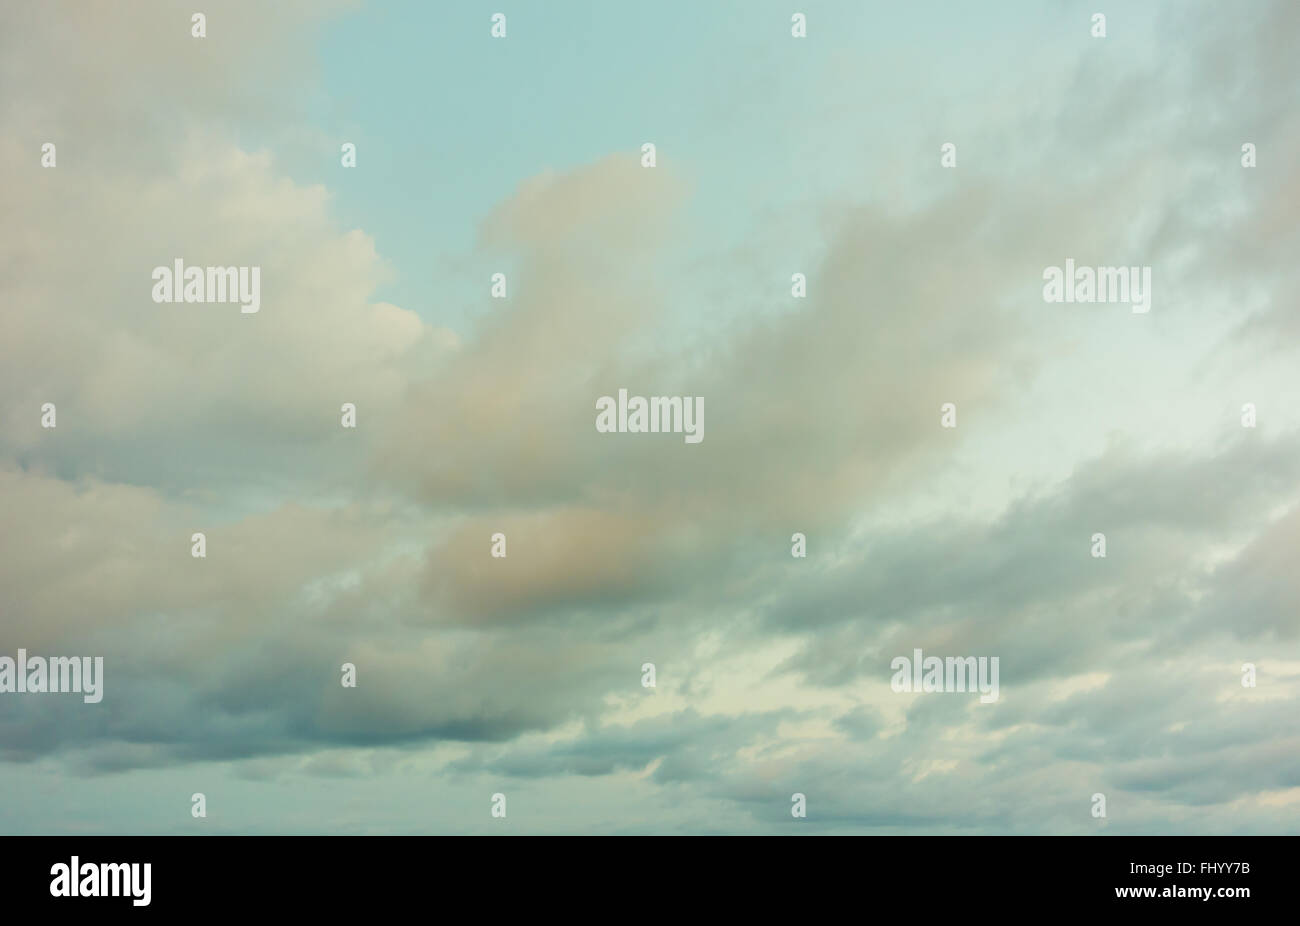 image of grunge sky background Stock Photo